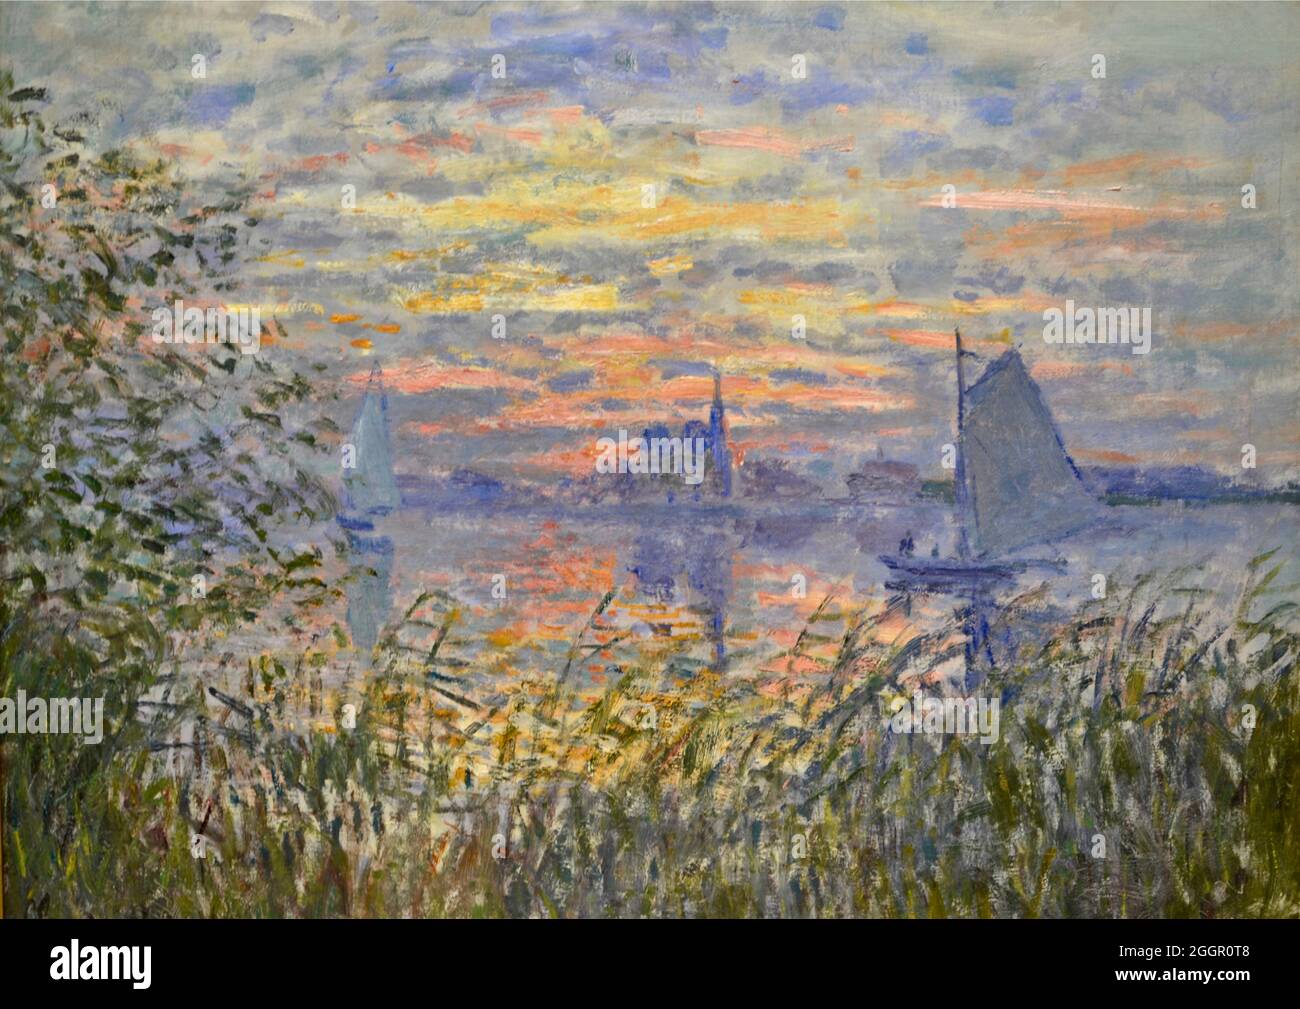 Illustrazione di Claude Monet intitolata Marine View with a Sunset - 1875 Foto Stock